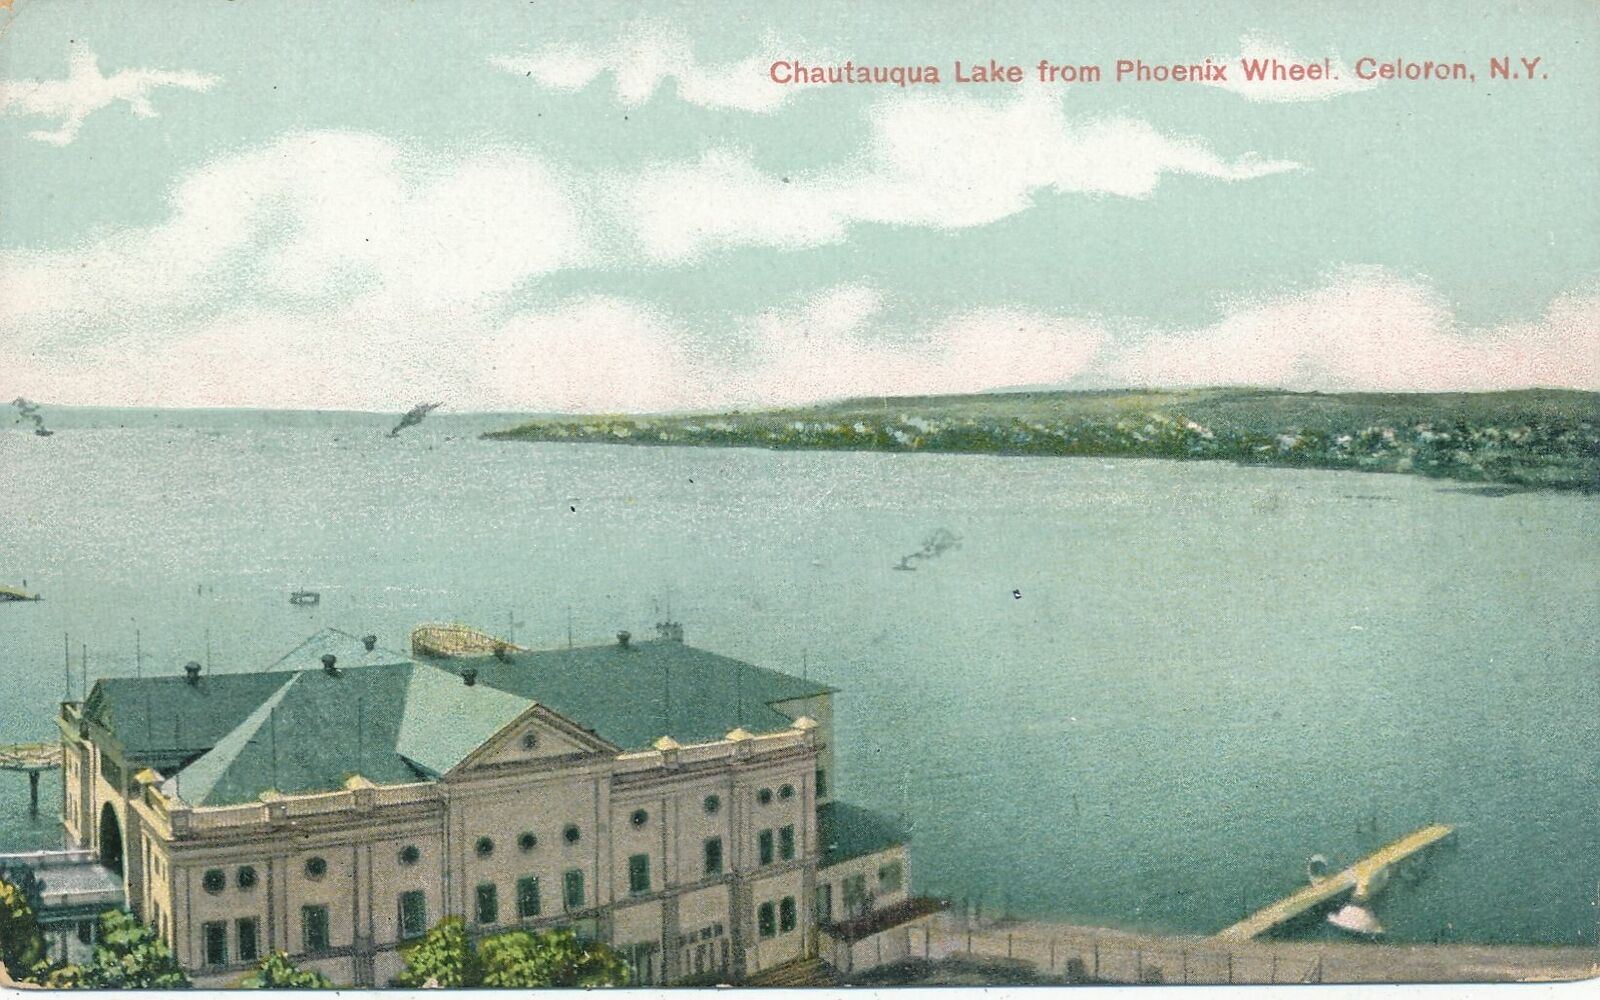 CELORON NY - Chautauqua Lake from Phoenix Wheel